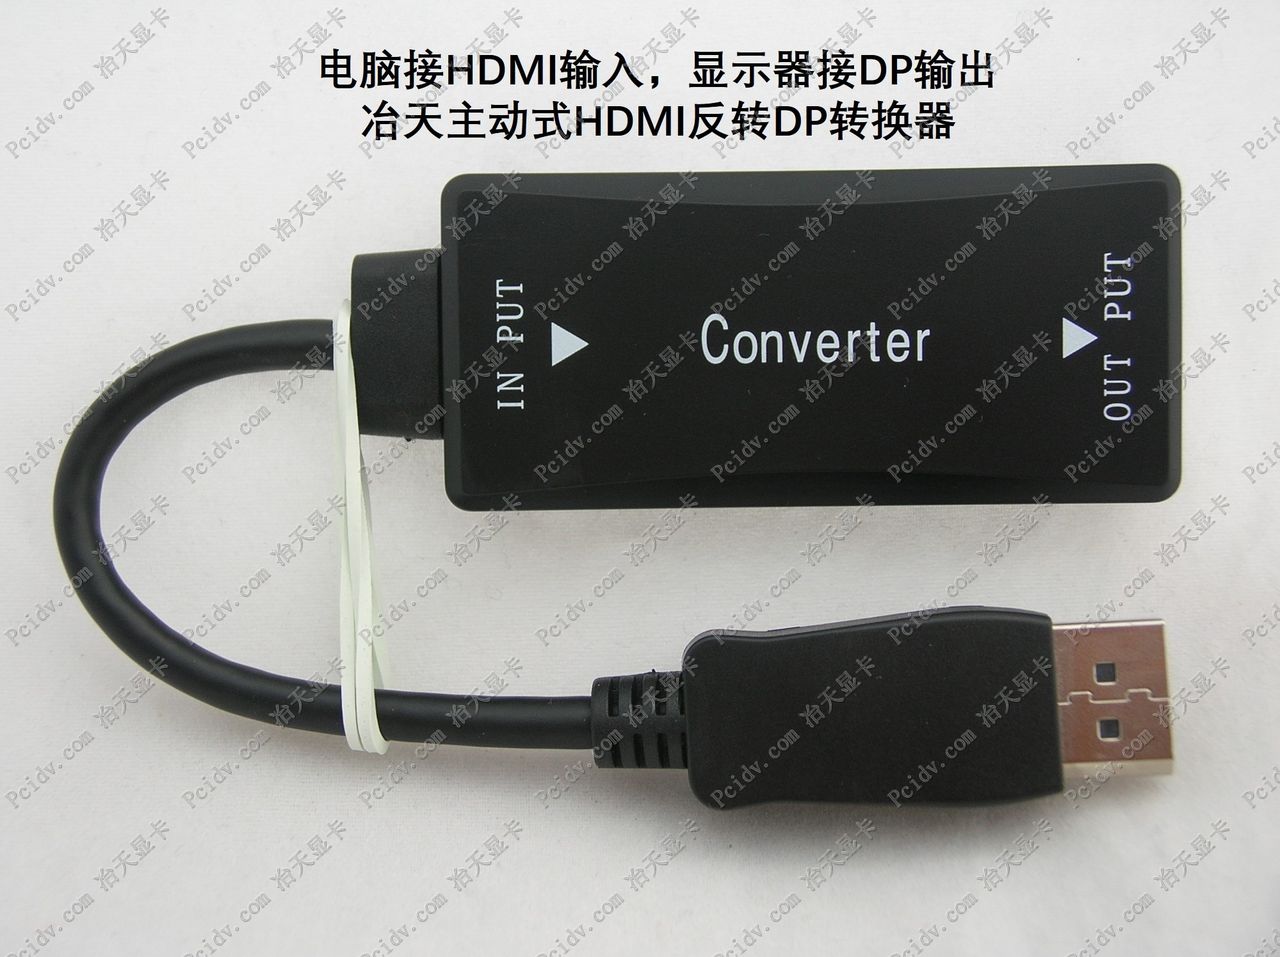 机顶盒电脑HDMI转DP显示器DVI反转DP主动式HDMI反转DP转换器带芯片有声音